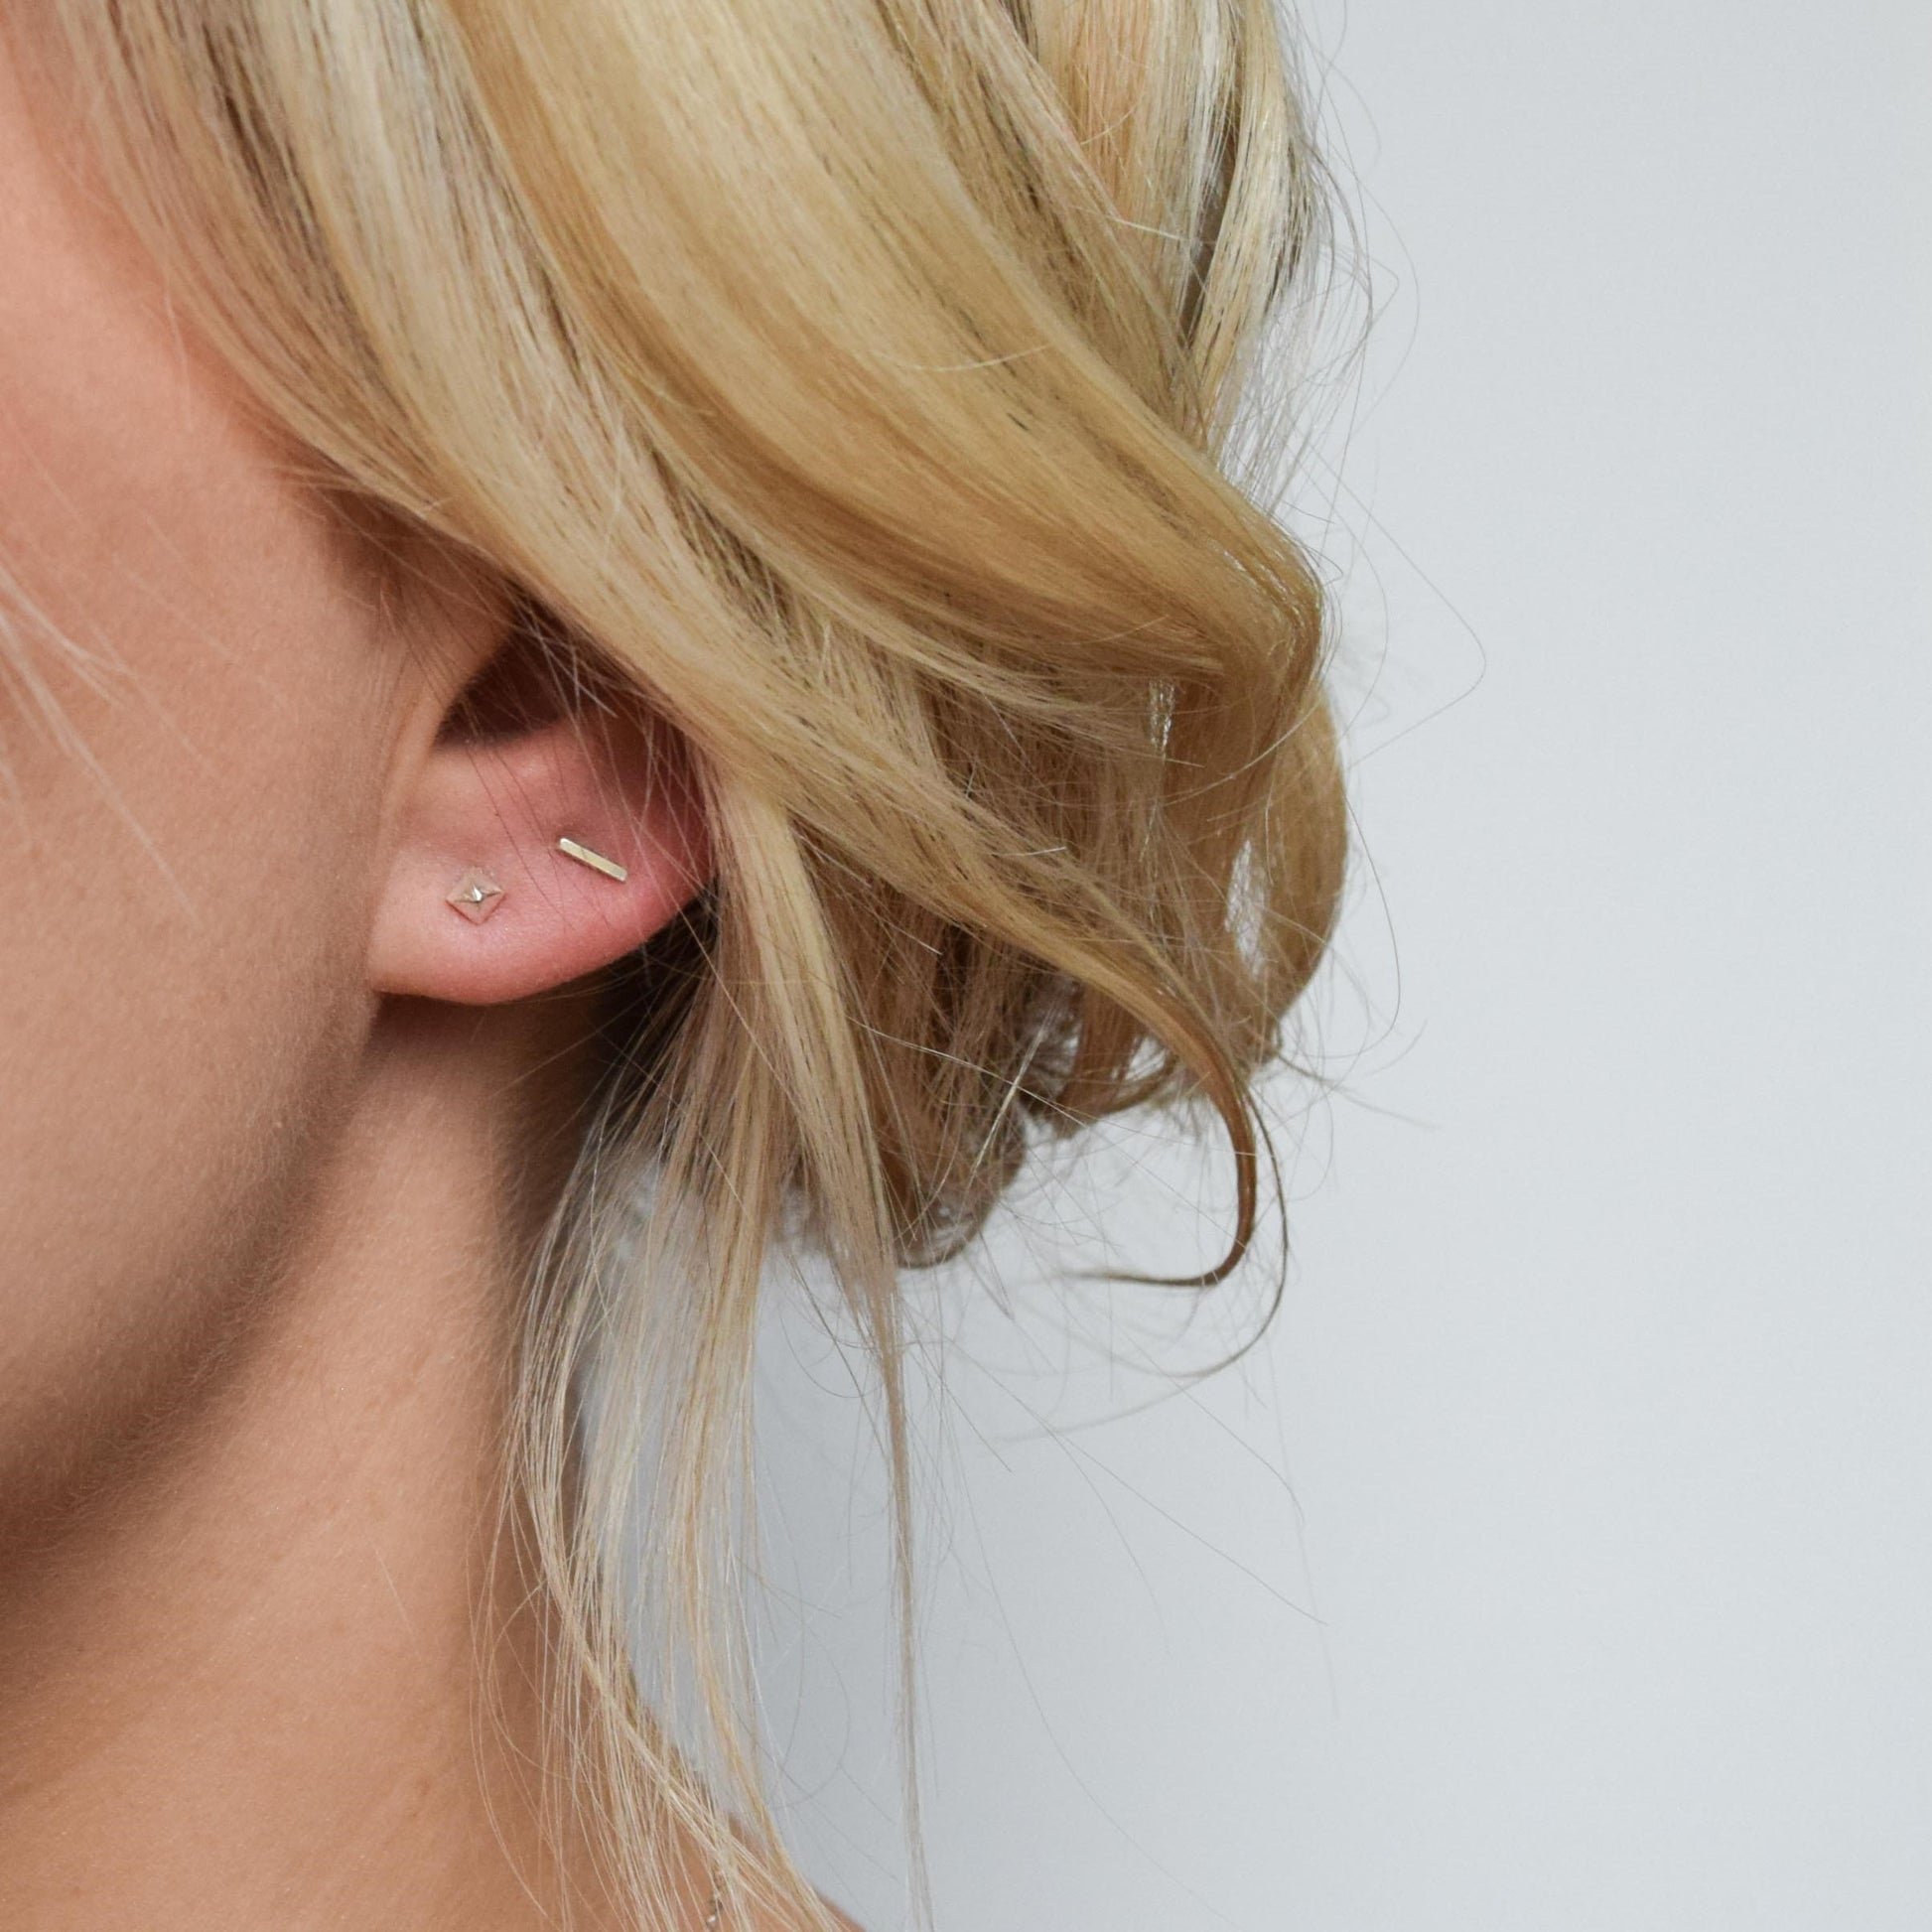 Sparkly Stud Earrings 5mm – J&CO Jewellery